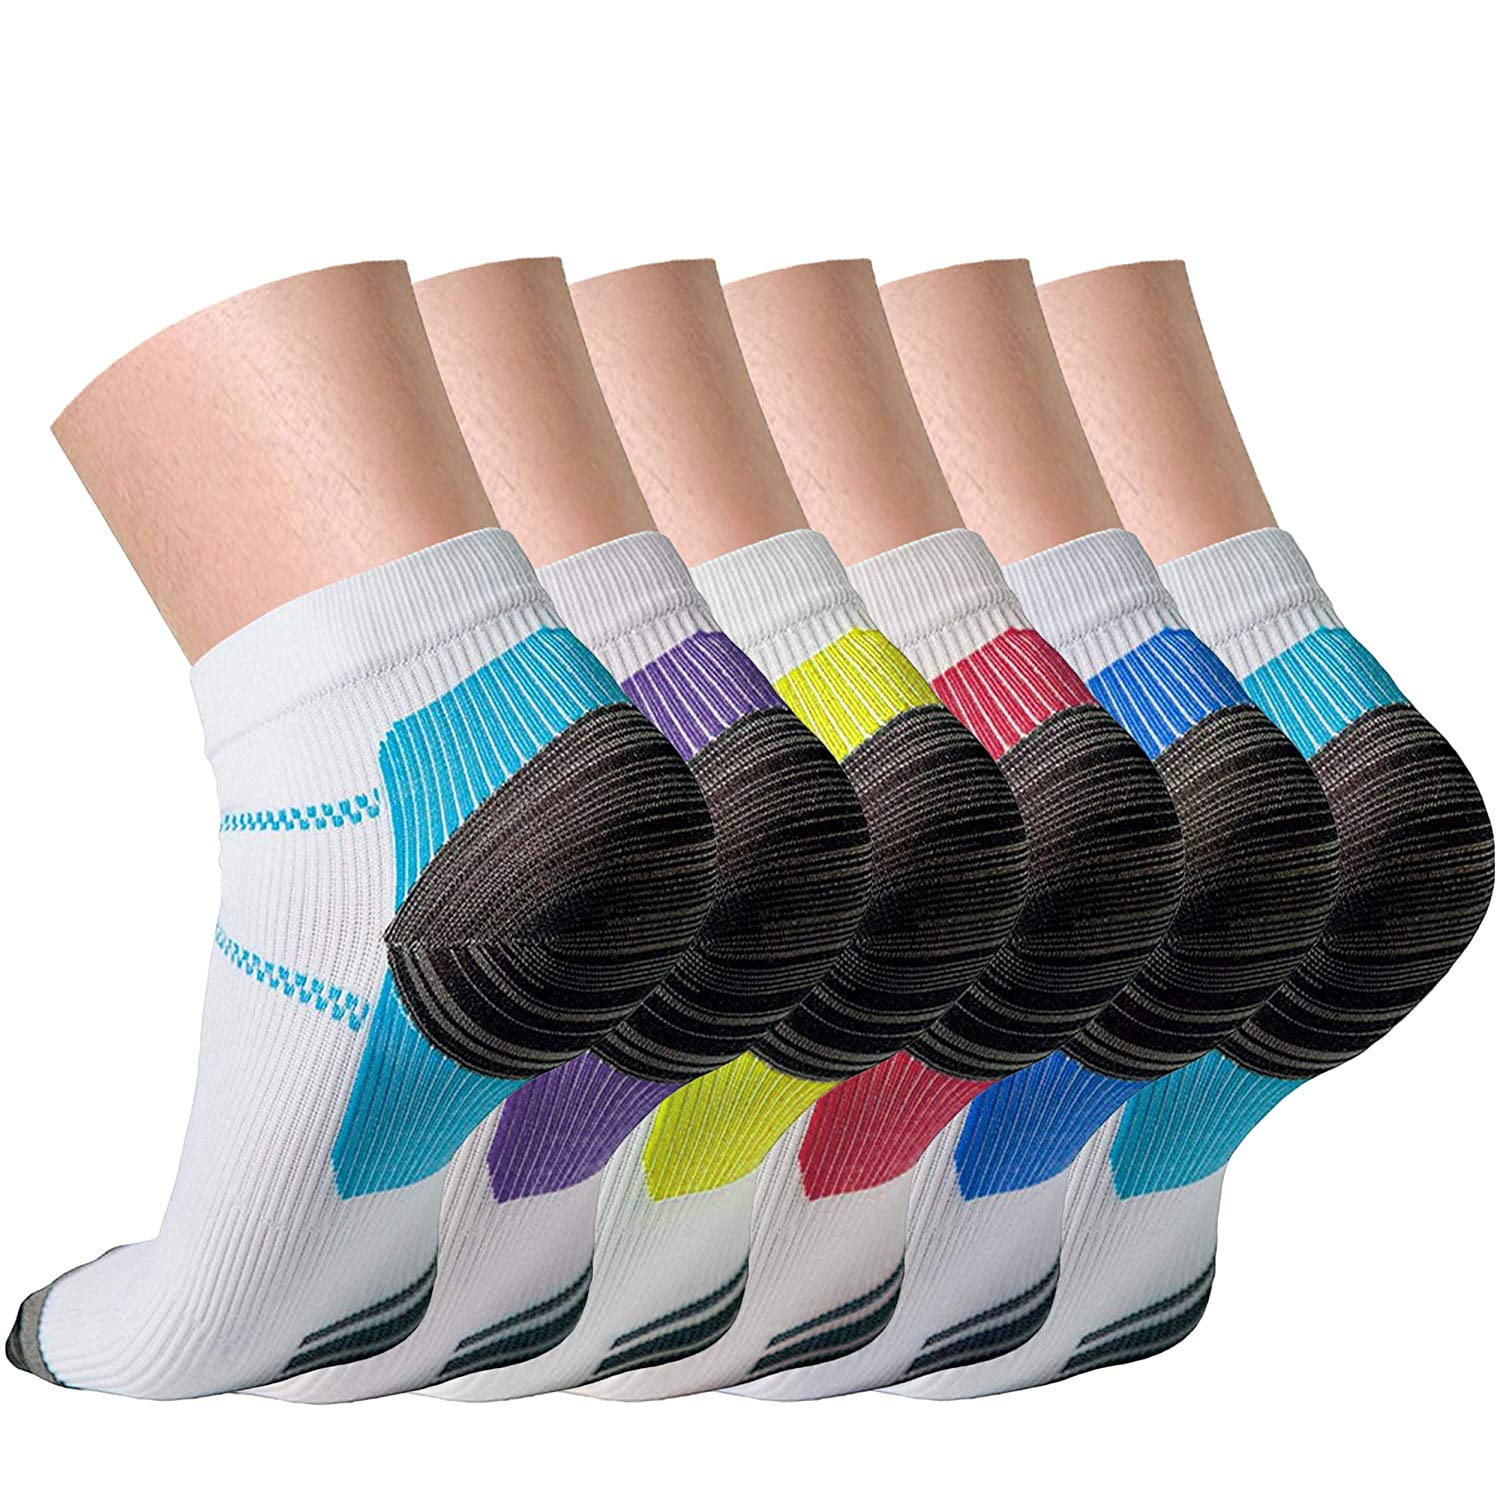 Compression socks for men - polizsupport